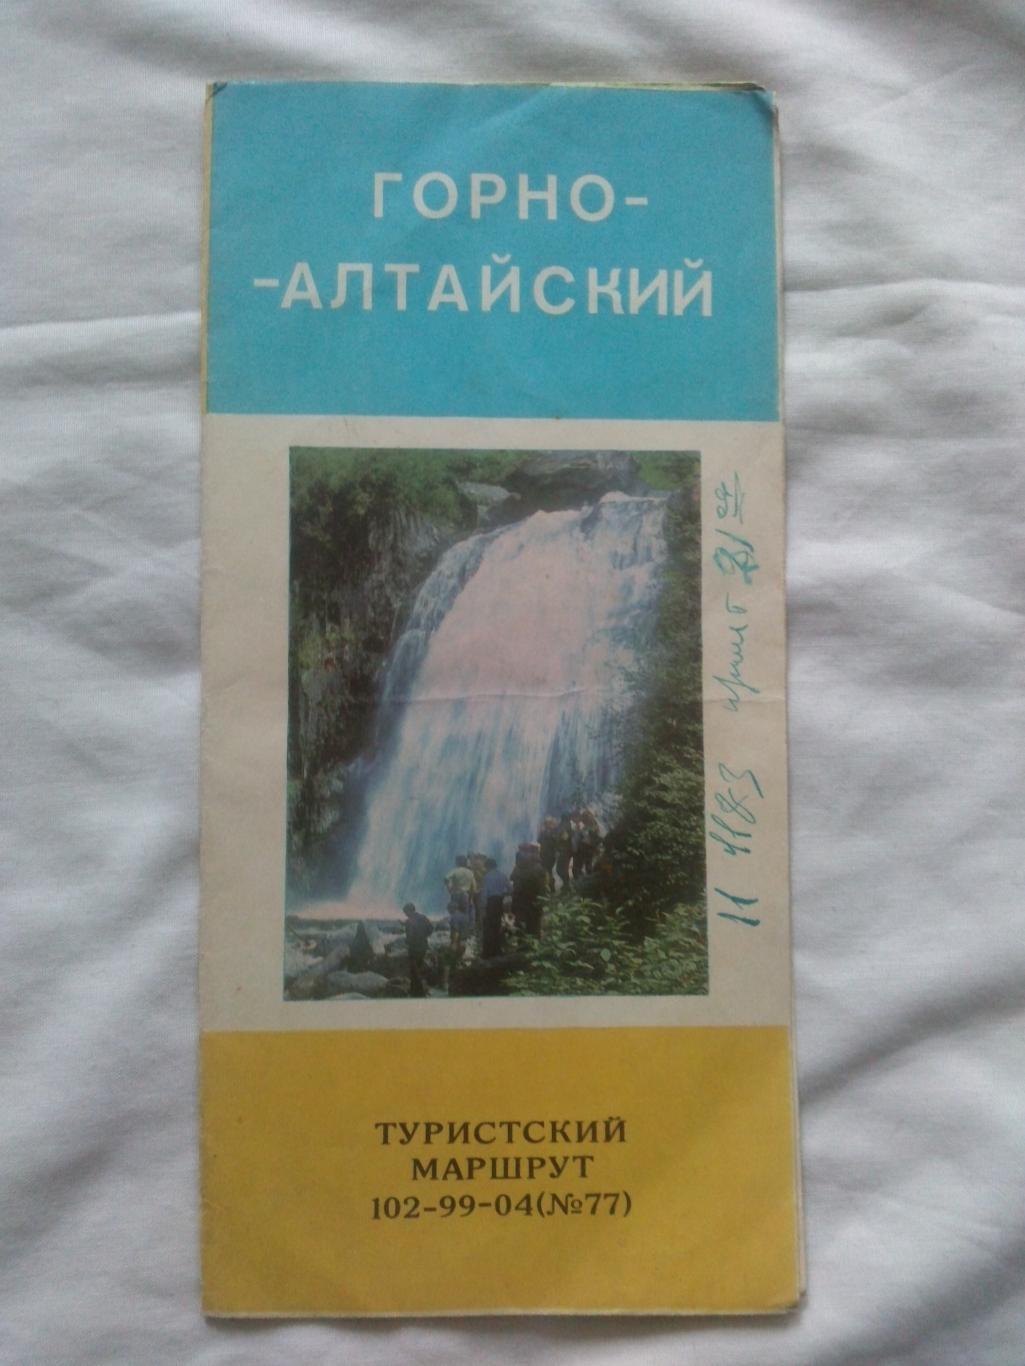 Карта (путеводитель) : Горно - Алтайский 1981 г. (туристский маршрут) Туризм